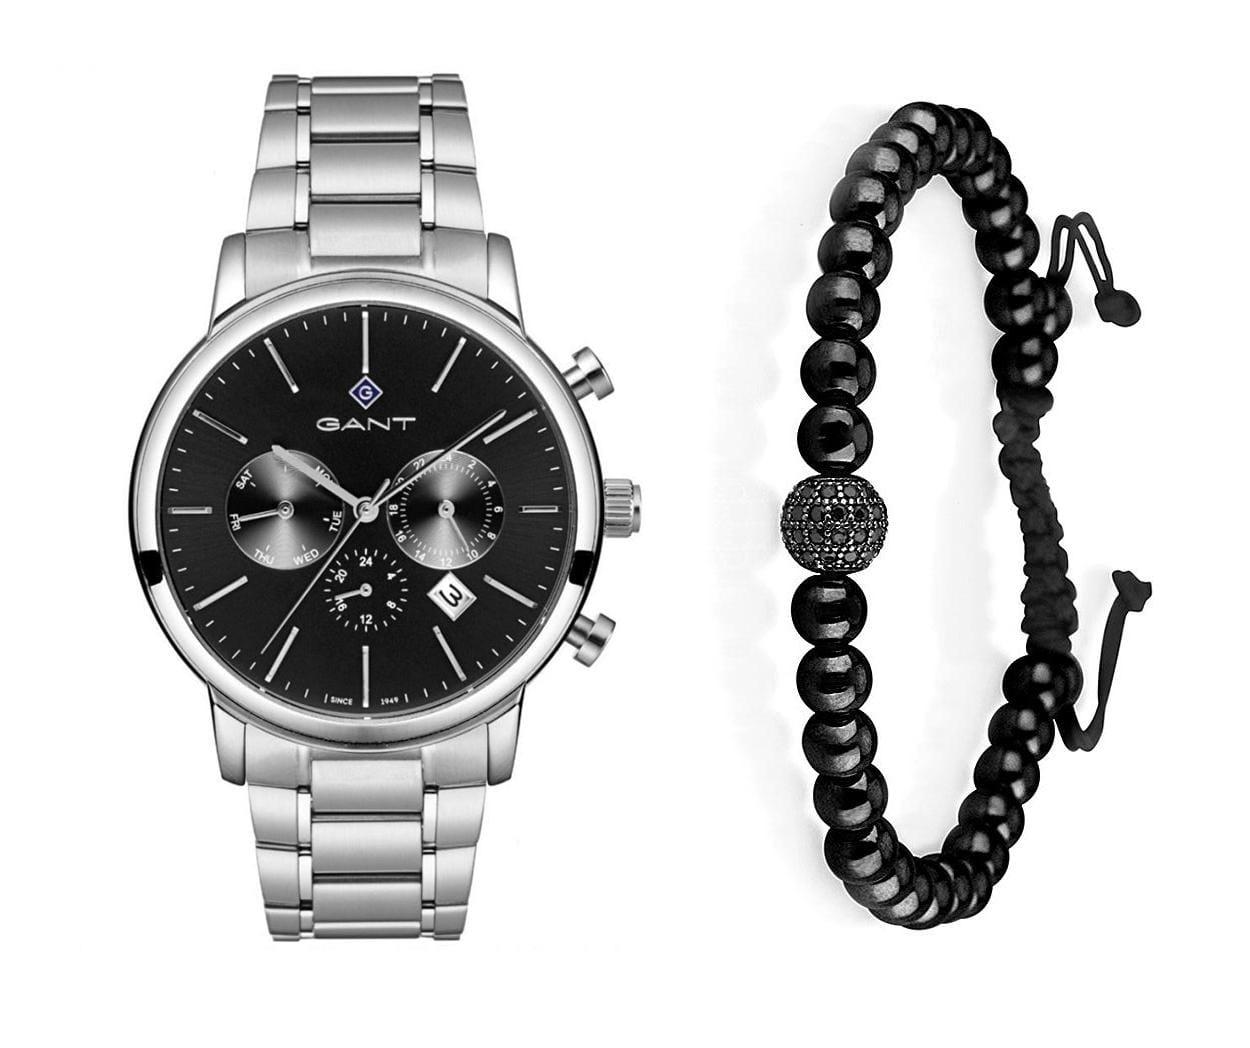 שעון יד אנלוגי לגבר gant g132001 גאנט עם צמיד כדורים שחור